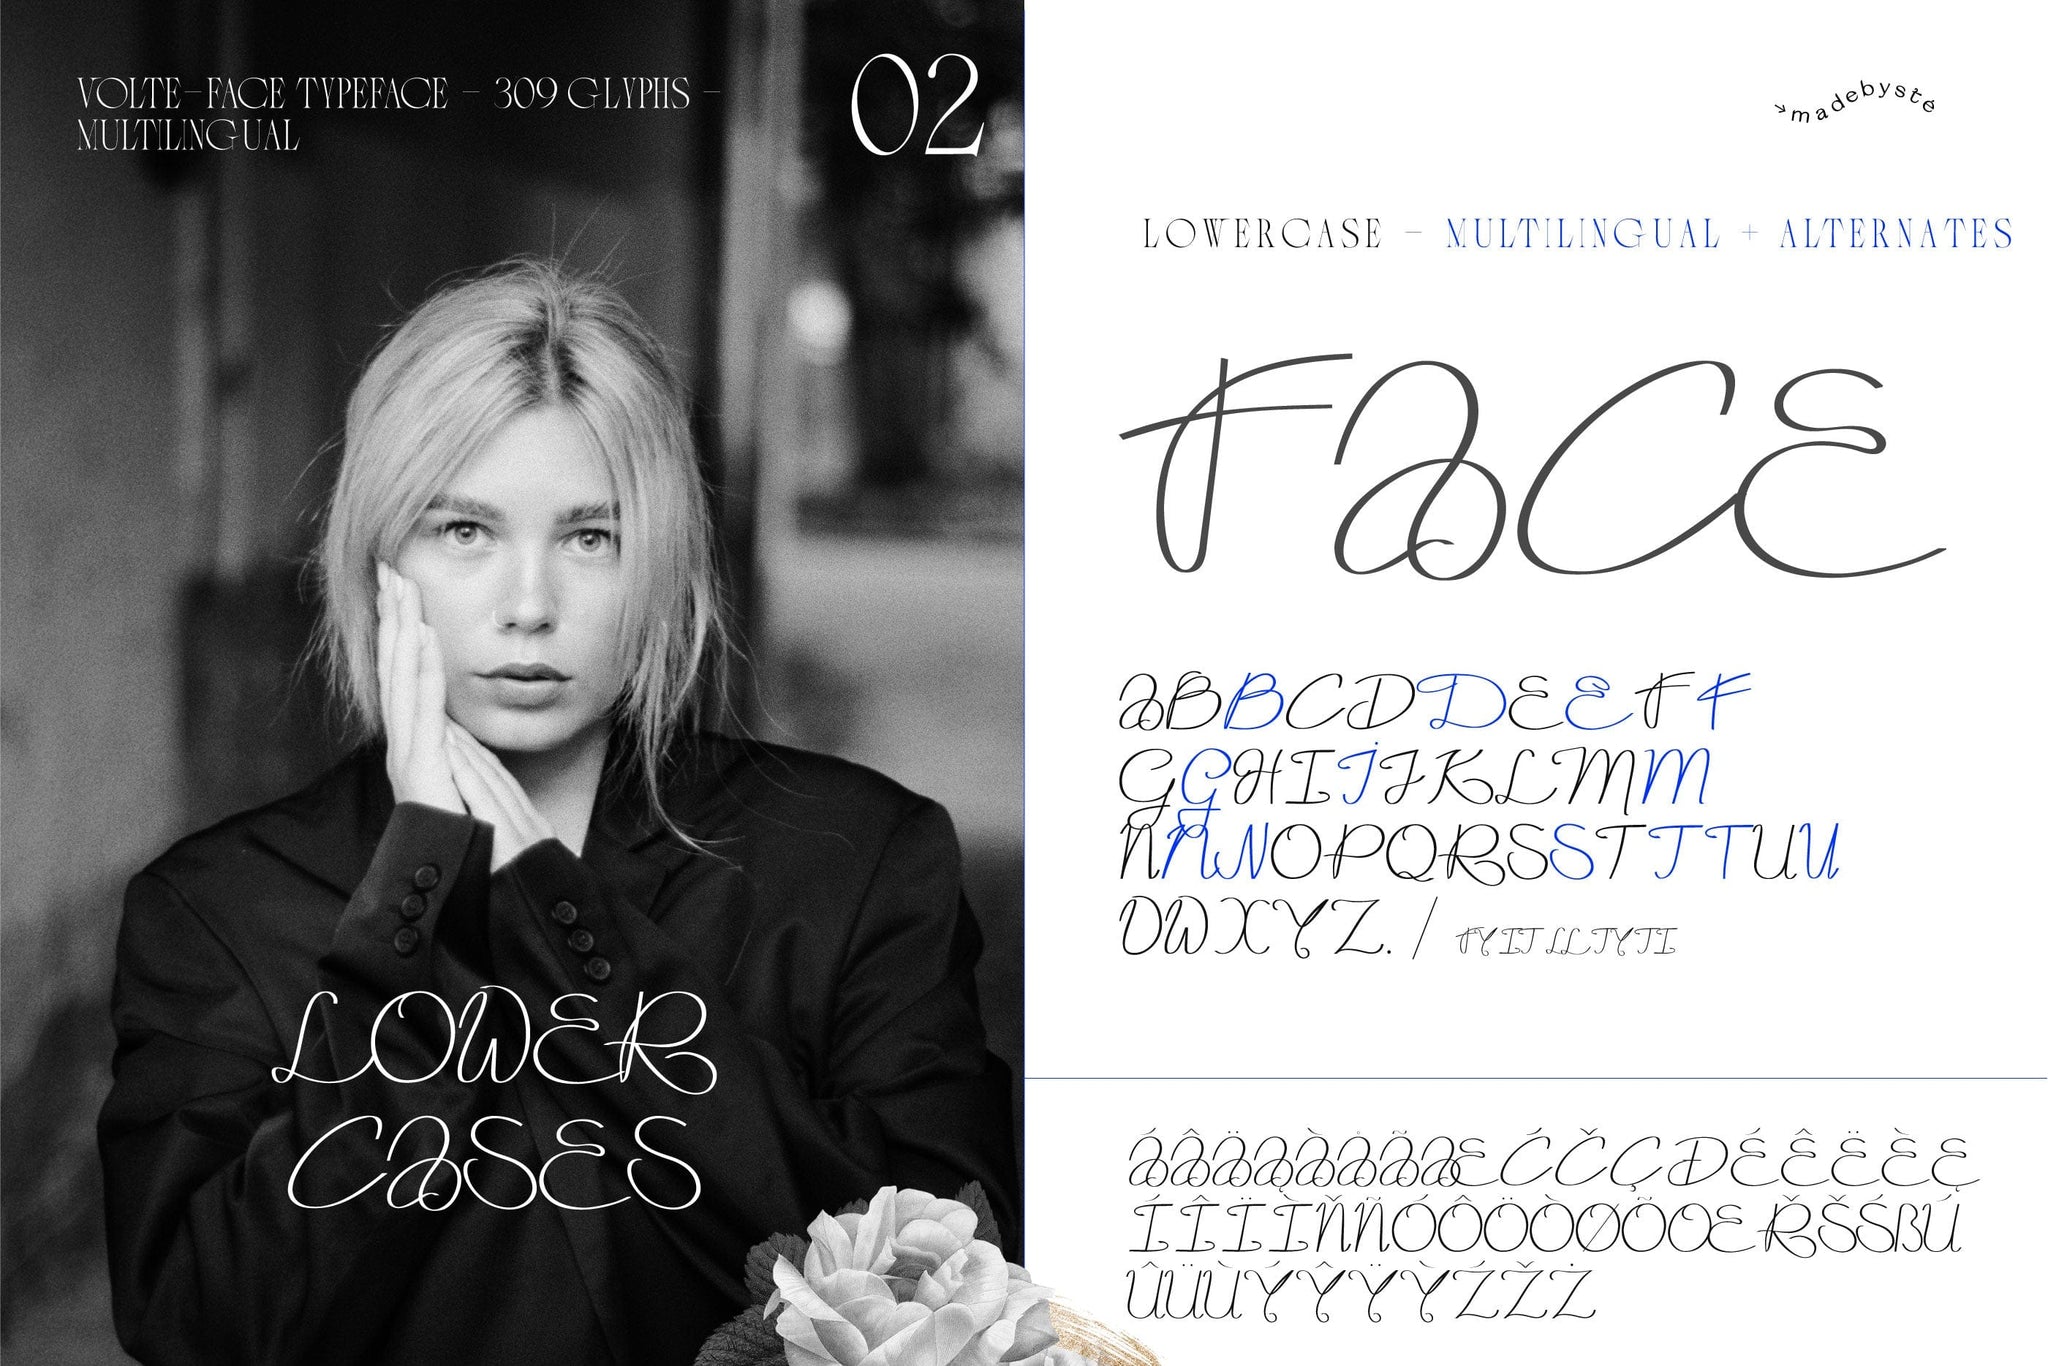 Volte-Face Typeface